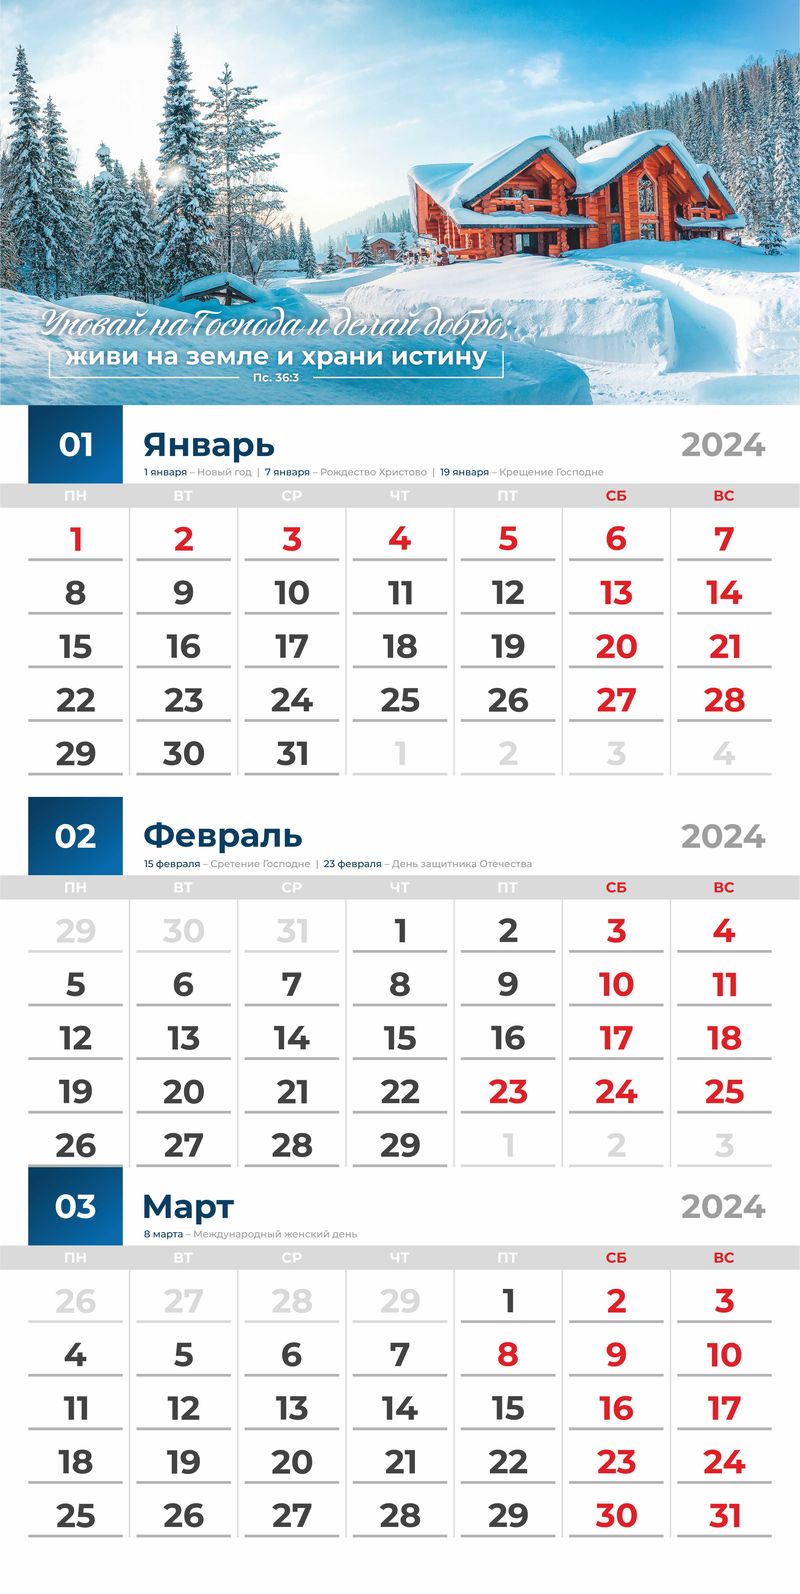 Календарь перекидной настенный "БЛАГОСЛОВЕННЫЙ ГОД" 2024 г.